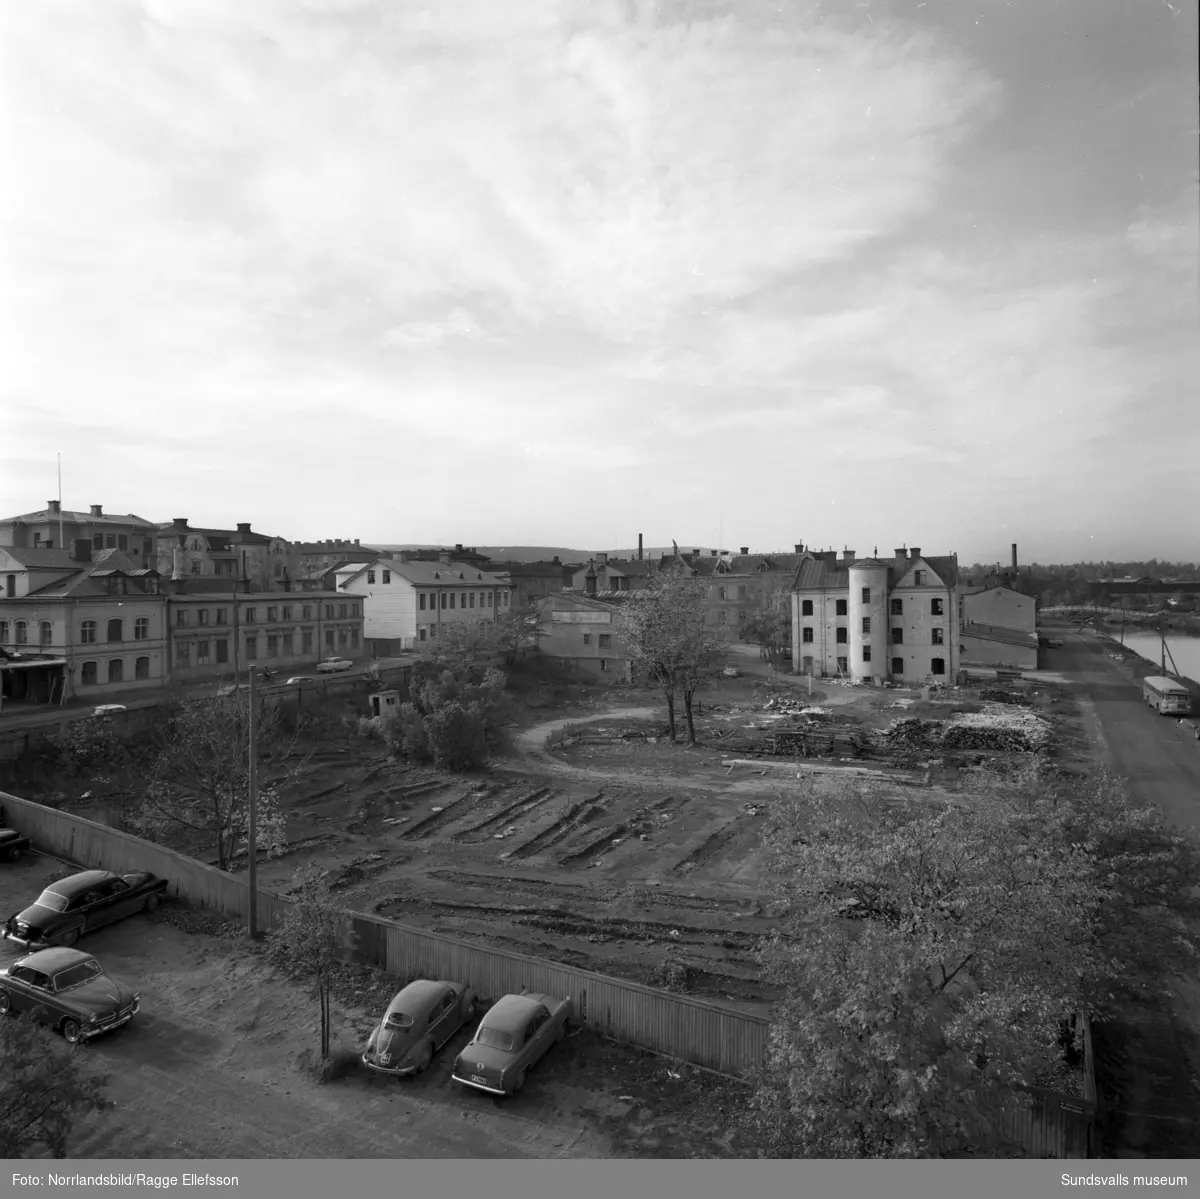 Rivningstomt och rivningshus i kvarteret Guldsmeden, Storgatan 48-52, fotograferat från det så kallade Sprickhuset. En minigolfbana har tidigare funnits på tomten.